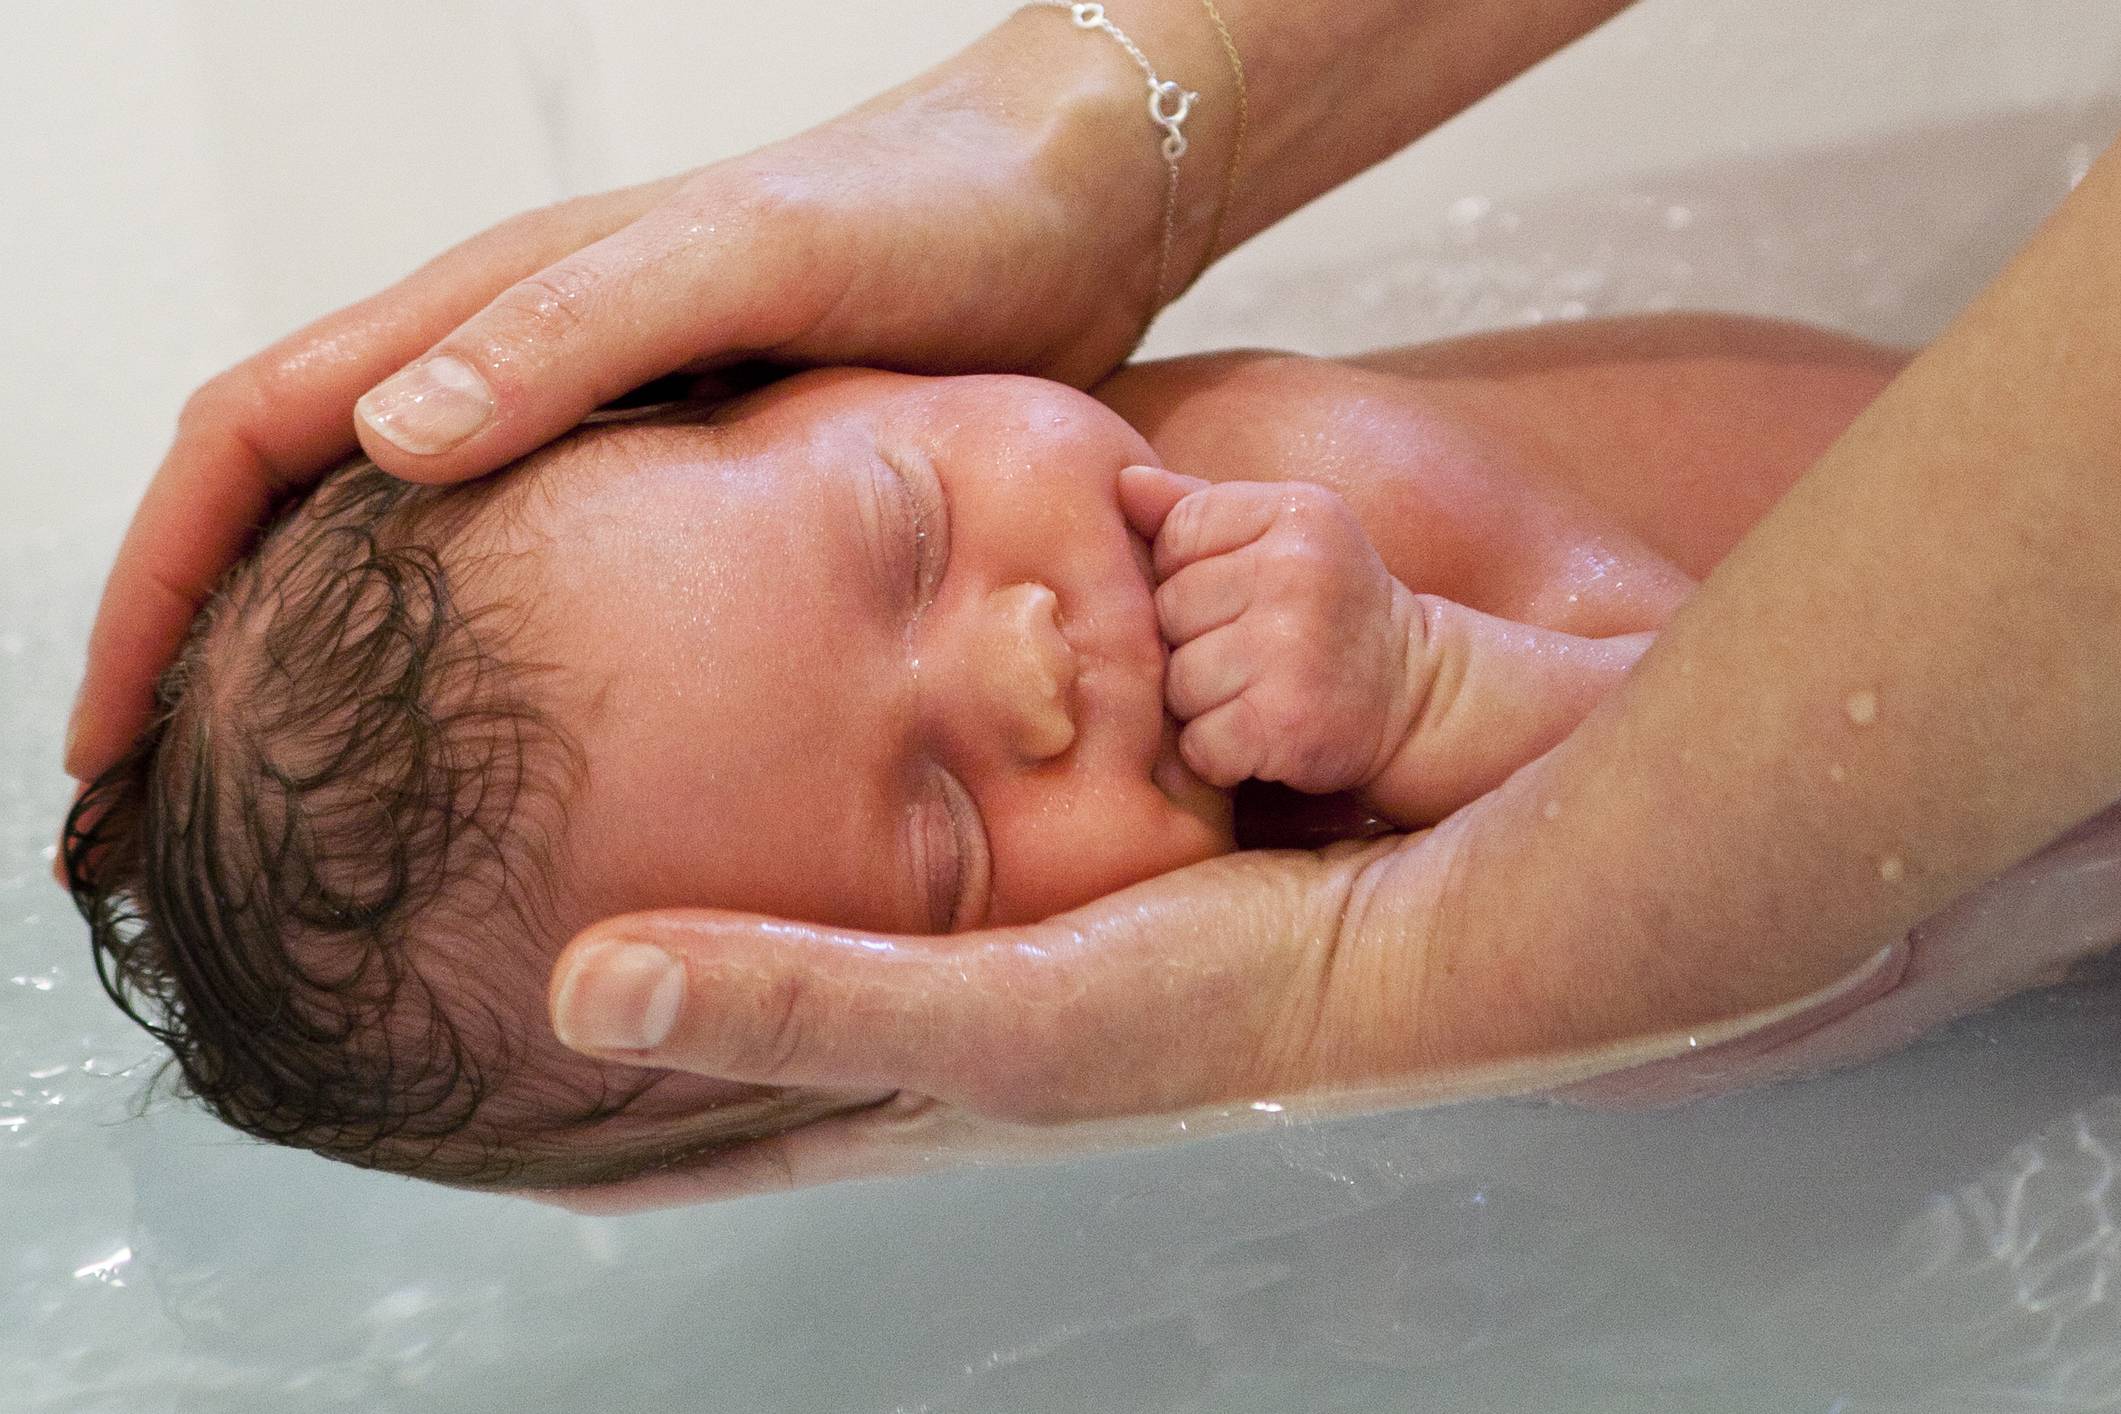 Как правильно купать новорожденного ребенка